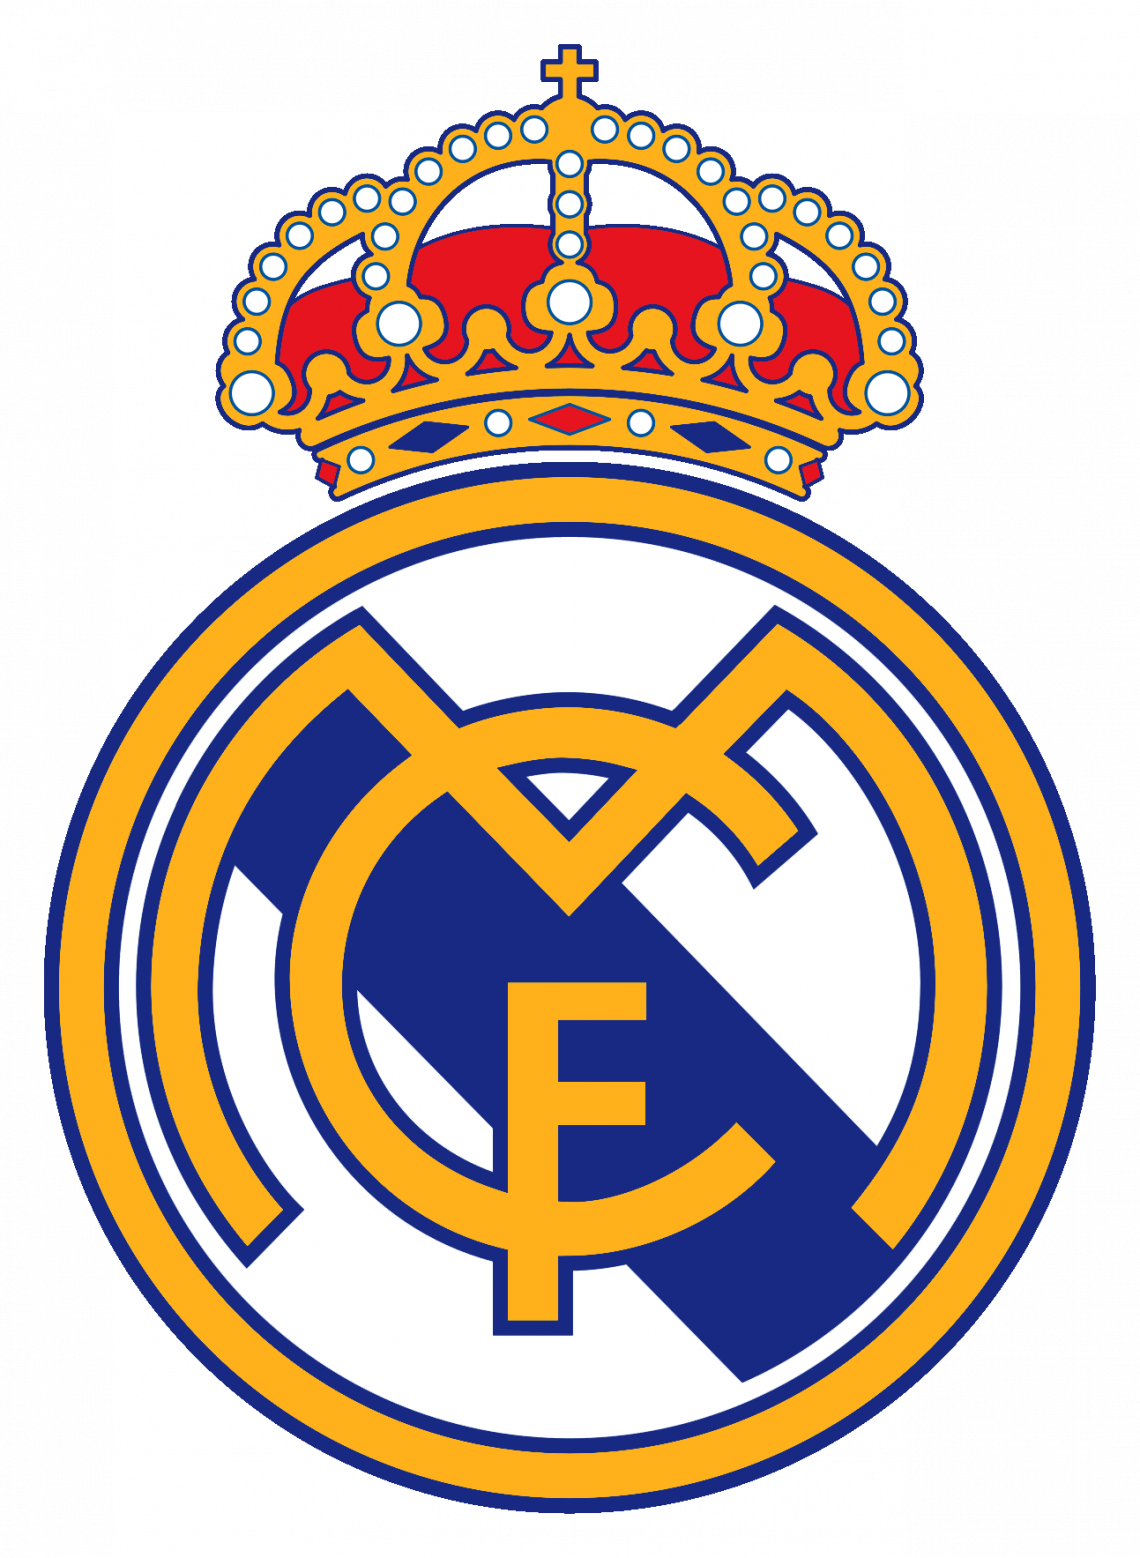 Imagens em PNG do Real Madrid: Celebre o clube com estilo e criatividade!